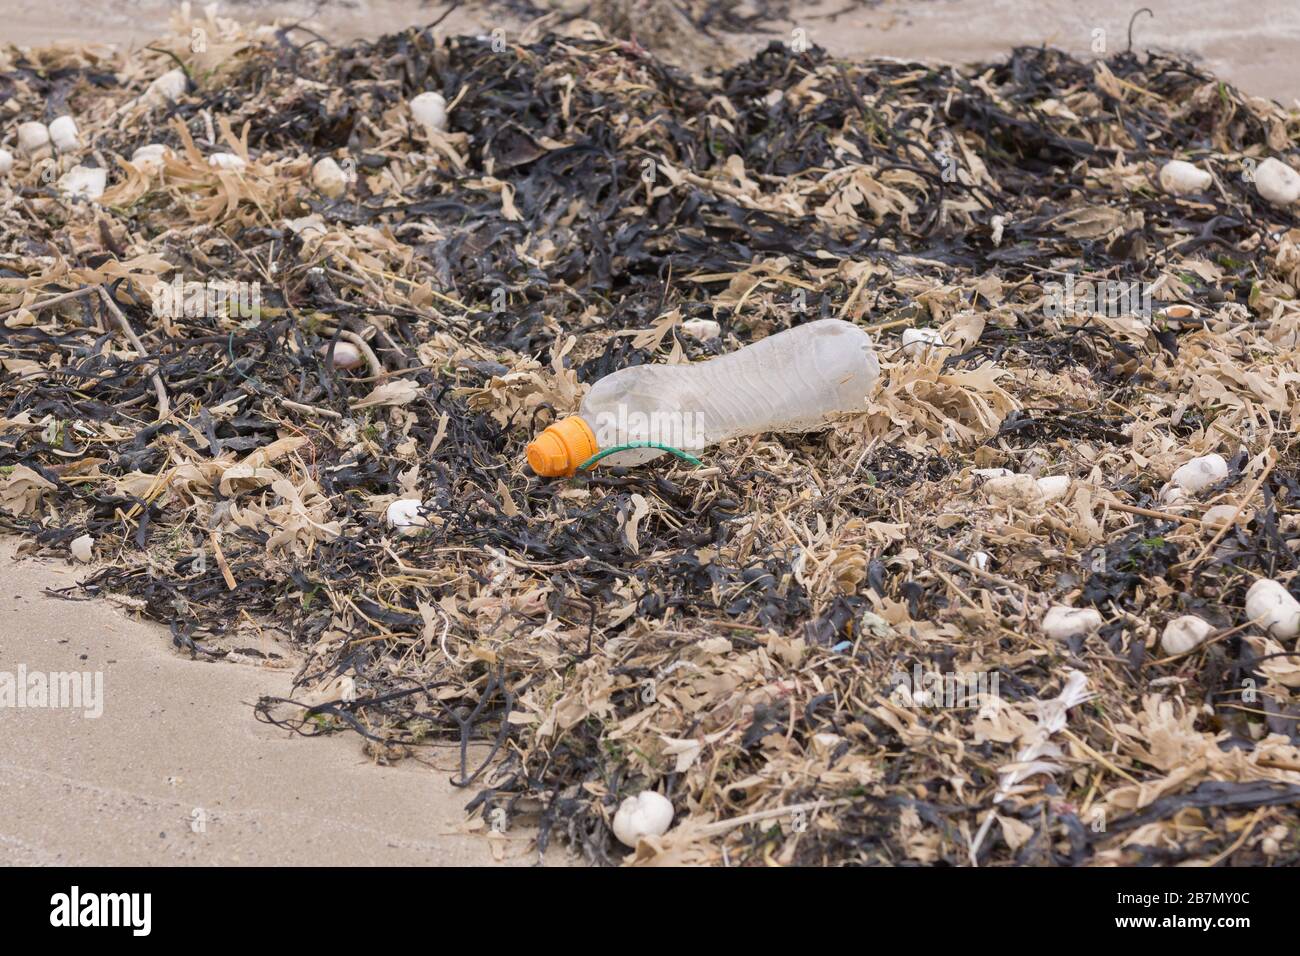 Bottiglia di plastica per bevande circondata da alghe morte e conchiglie sulla spiaggia un esempio dei molti pezzi di immondizia in mare Foto Stock